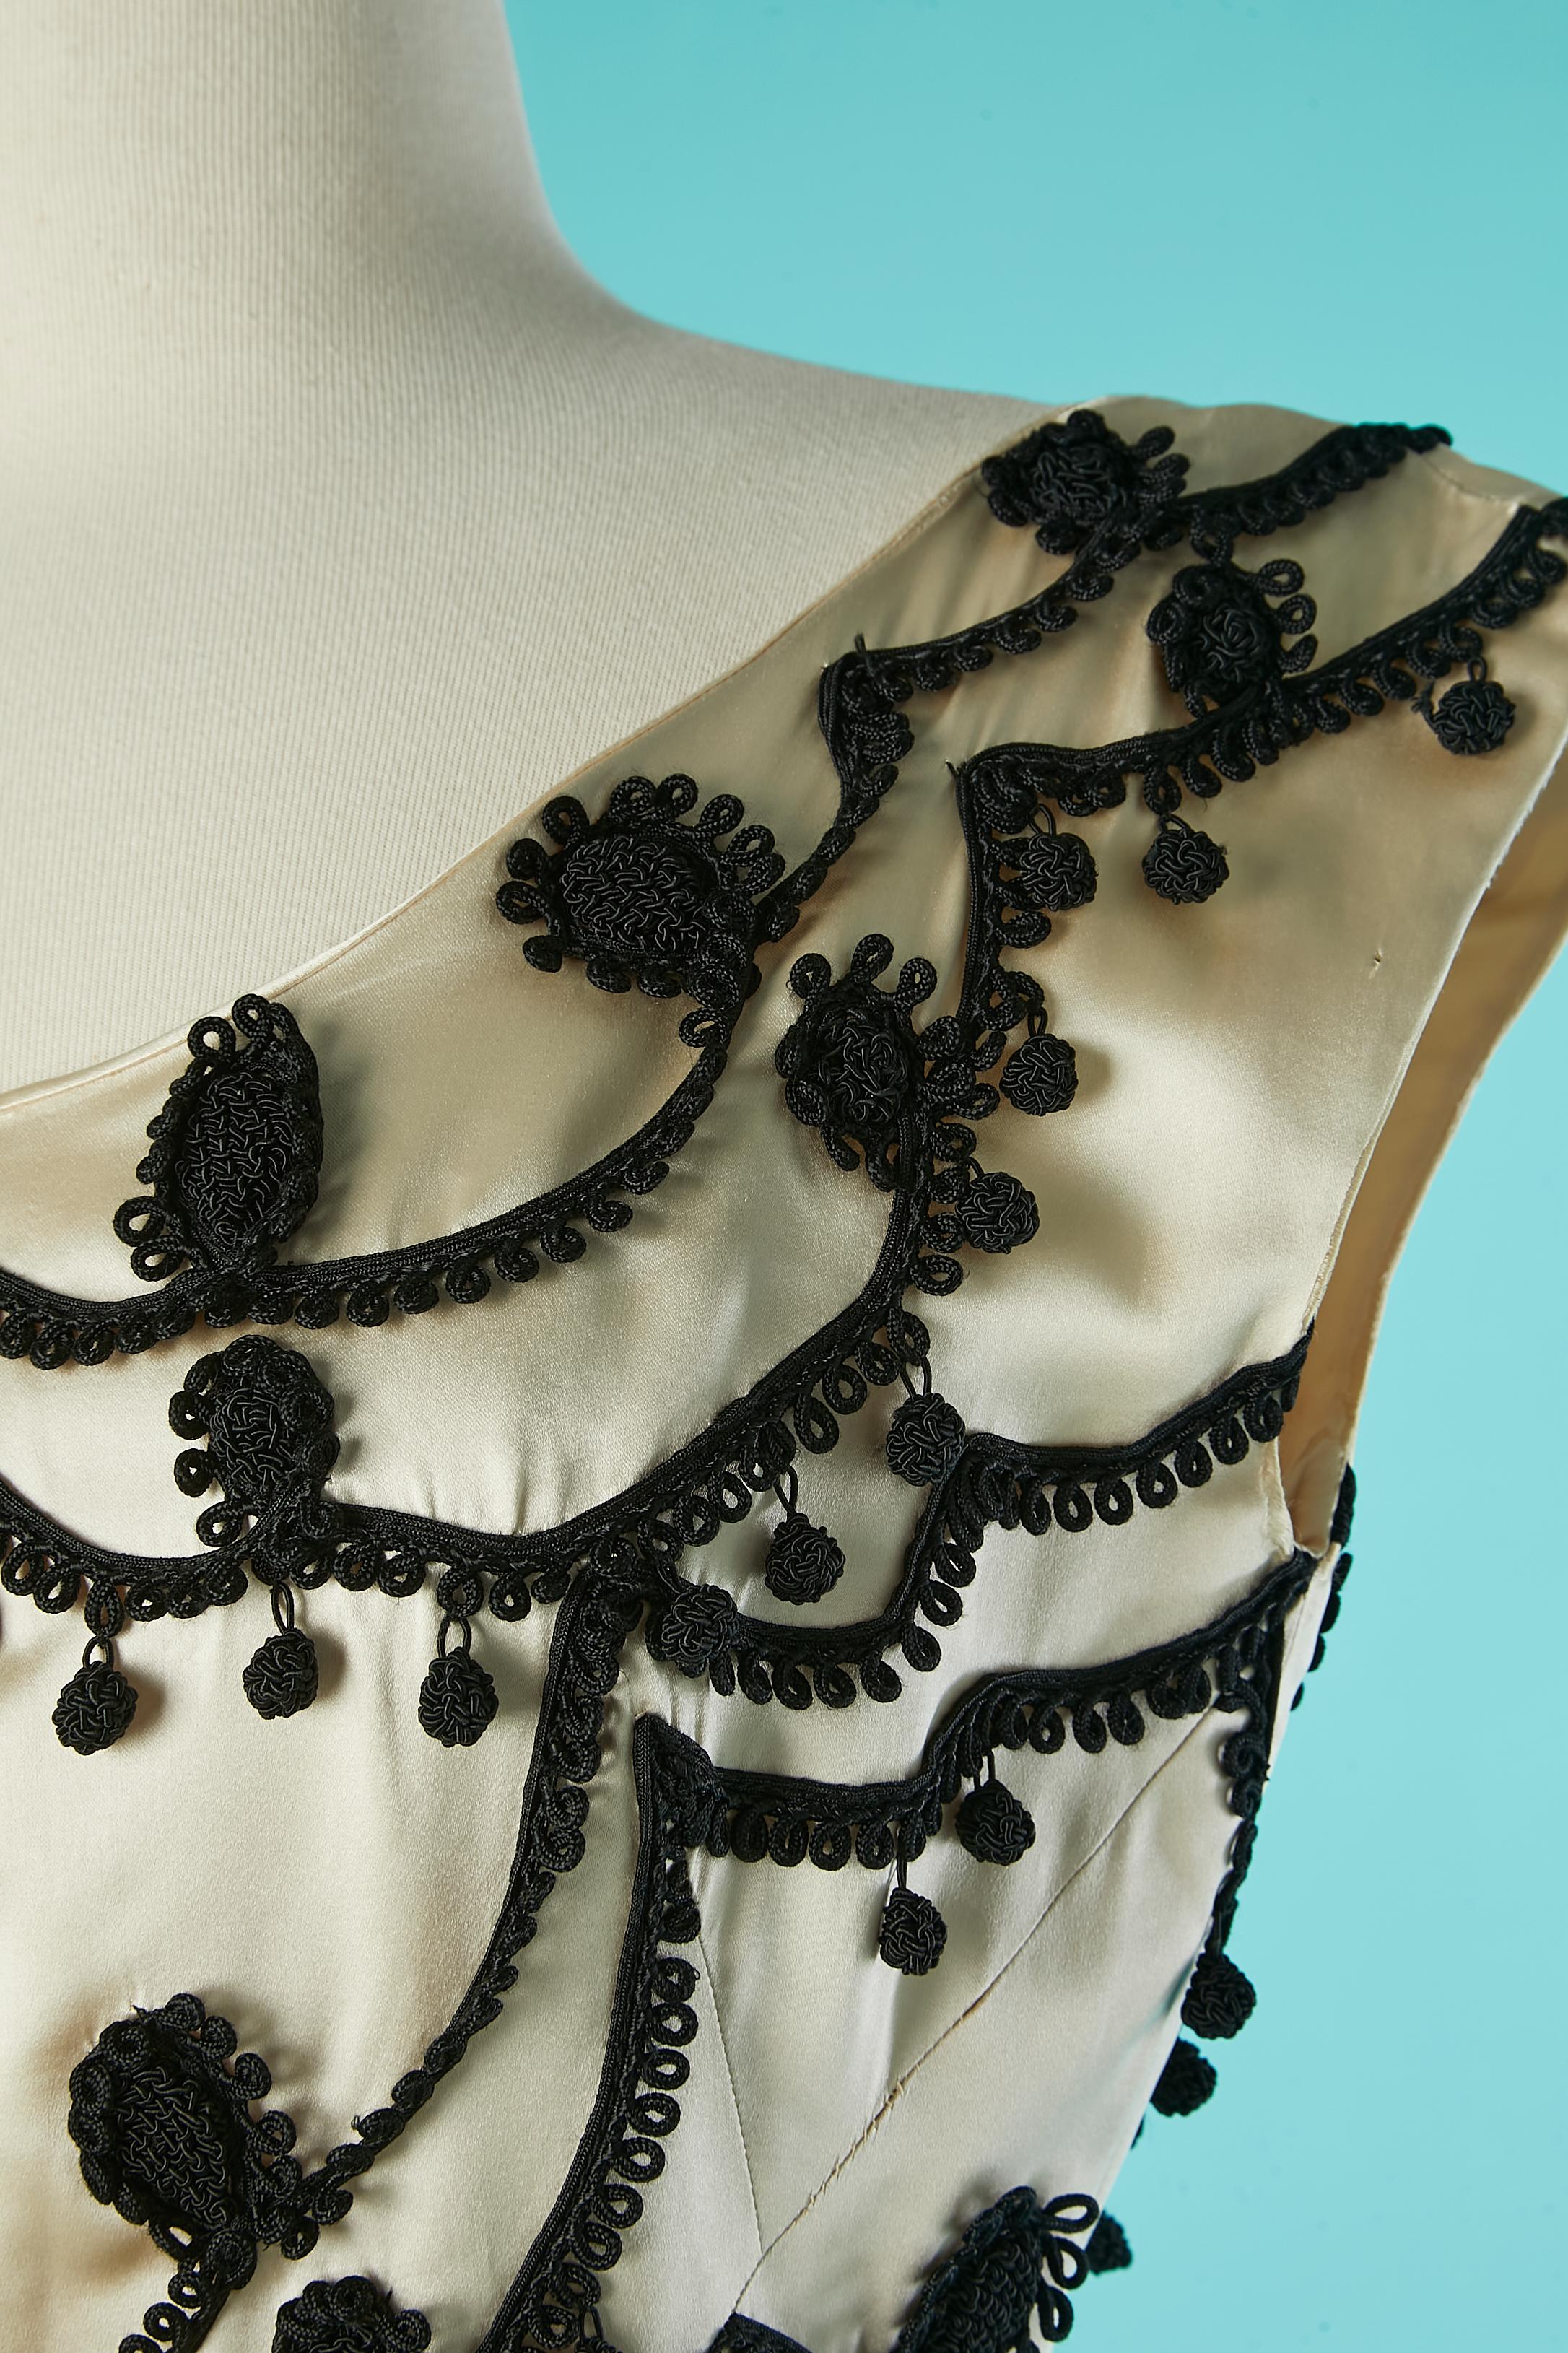 Robe de cocktail en satin ivoire avec passementerie noire. Pas d'étiquette de composition du tissu mais probablement une doublure en organza sur la partie supérieure de la robe et une doublure en acétate à l'intérieur de la jupe. Gros grain